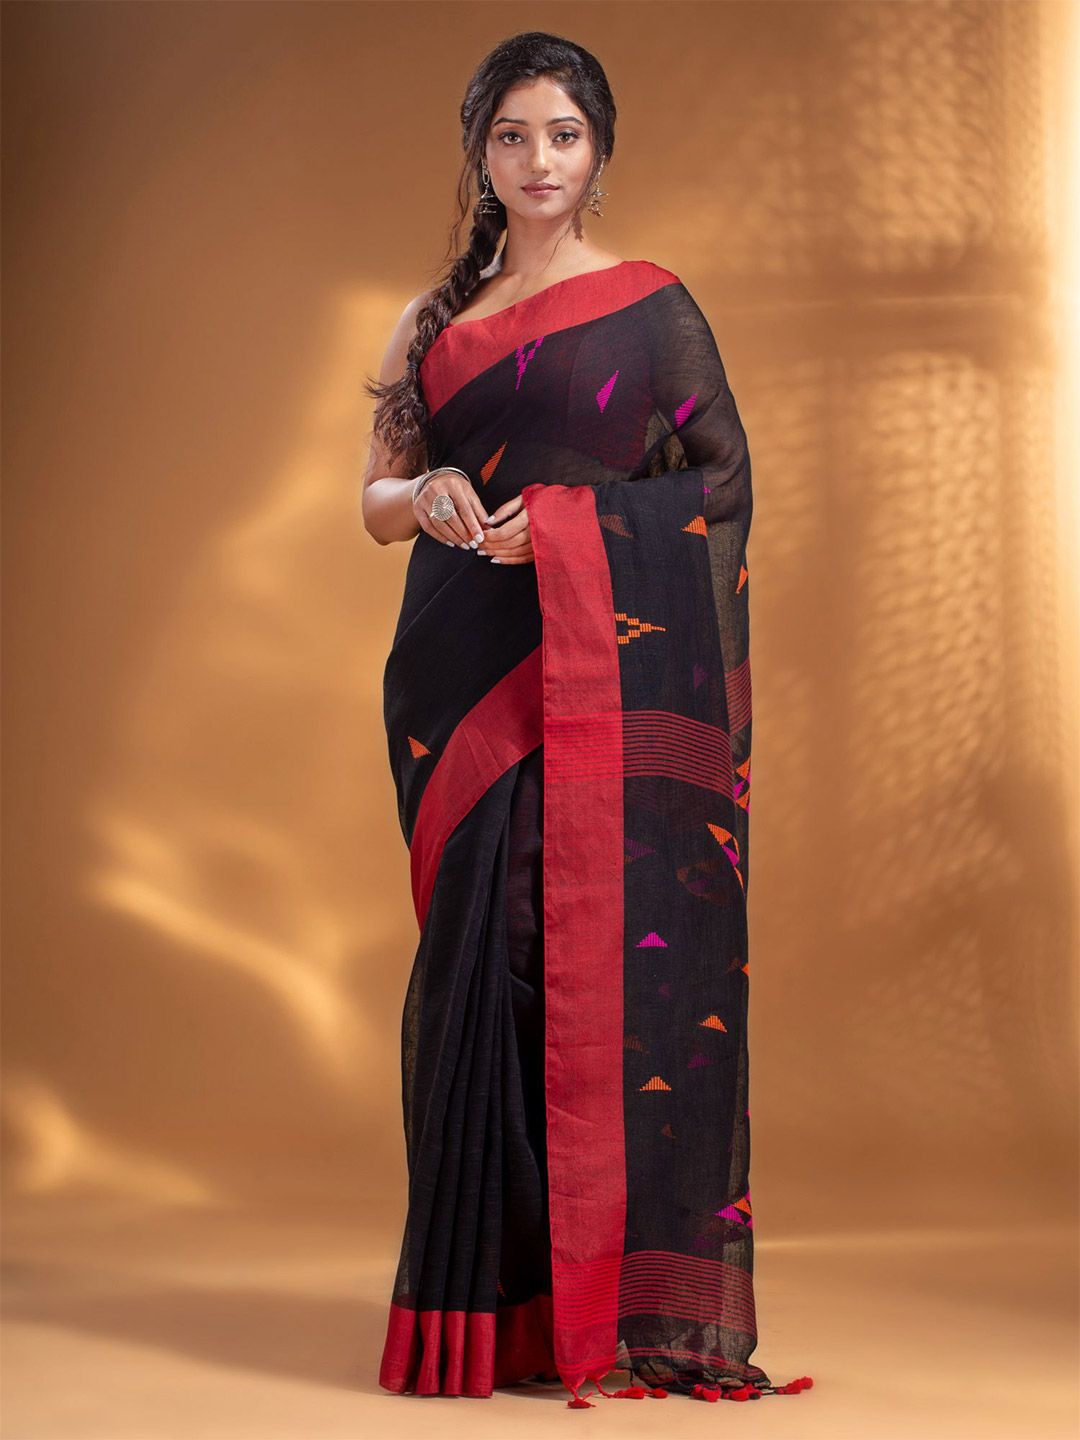 Arhi Black & Pink Woven Design Zari Pure Linen Saree Price in India